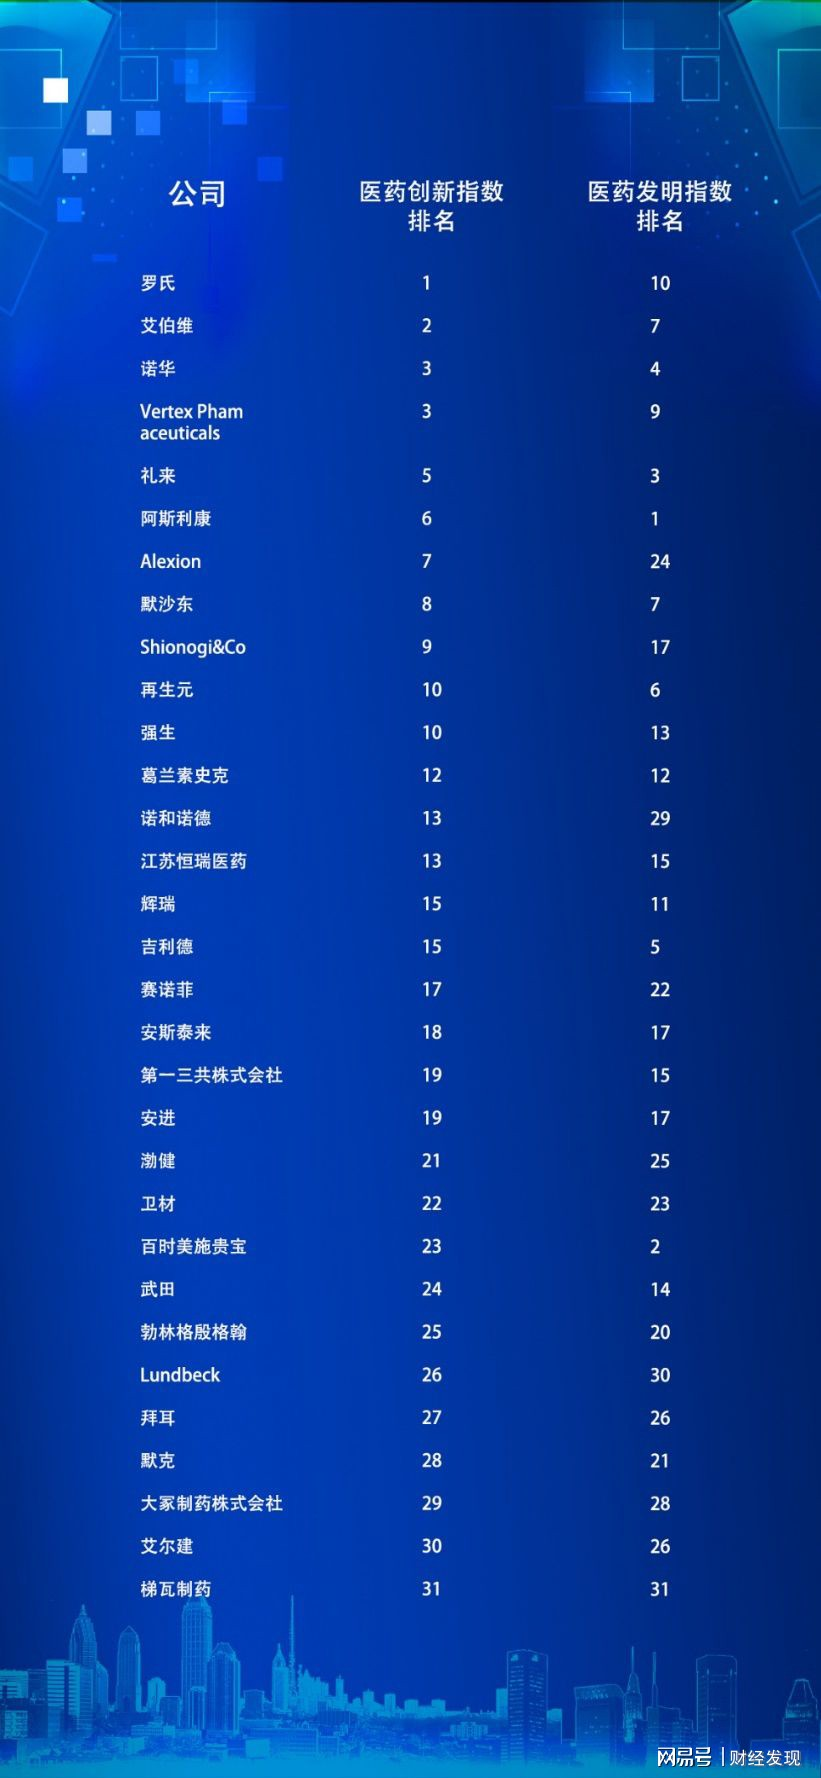 2020<font color="red">医药</font><font color="red">创新</font><font color="red">指数</font>排行榜，恒瑞成为中国唯一上榜企业，全球第13